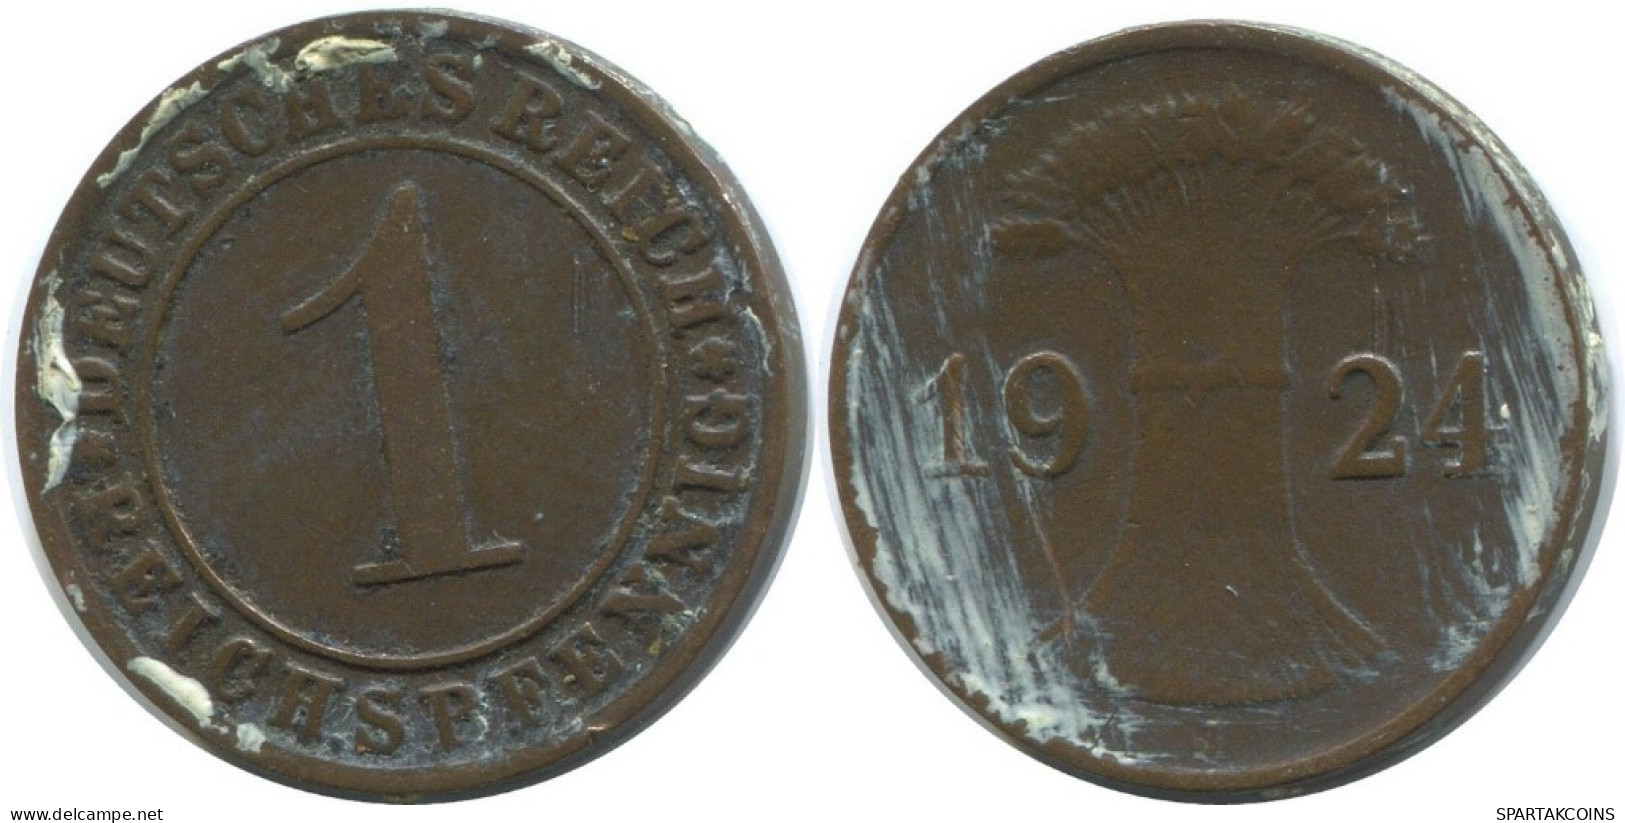 1 REICHSPFENNIG 1924 J ALEMANIA Moneda GERMANY #AD435.9.E.A - 1 Renten- & 1 Reichspfennig